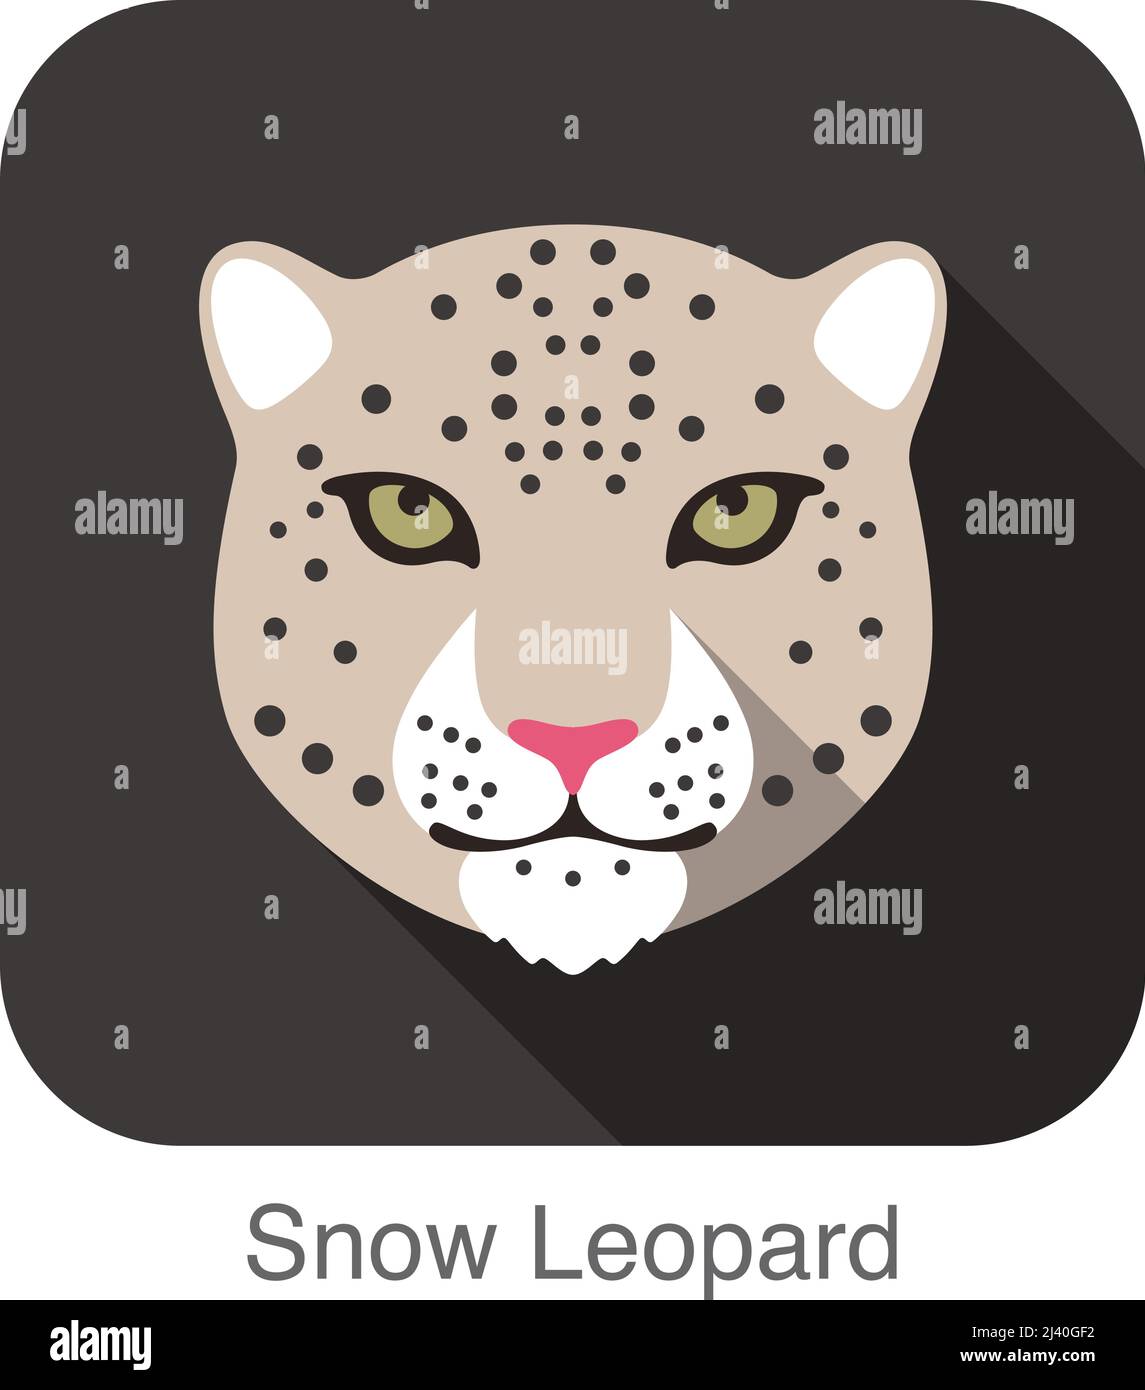 Snow Leopard, visage de race de chat cartoon télévision icône concevoir Illustration de Vecteur